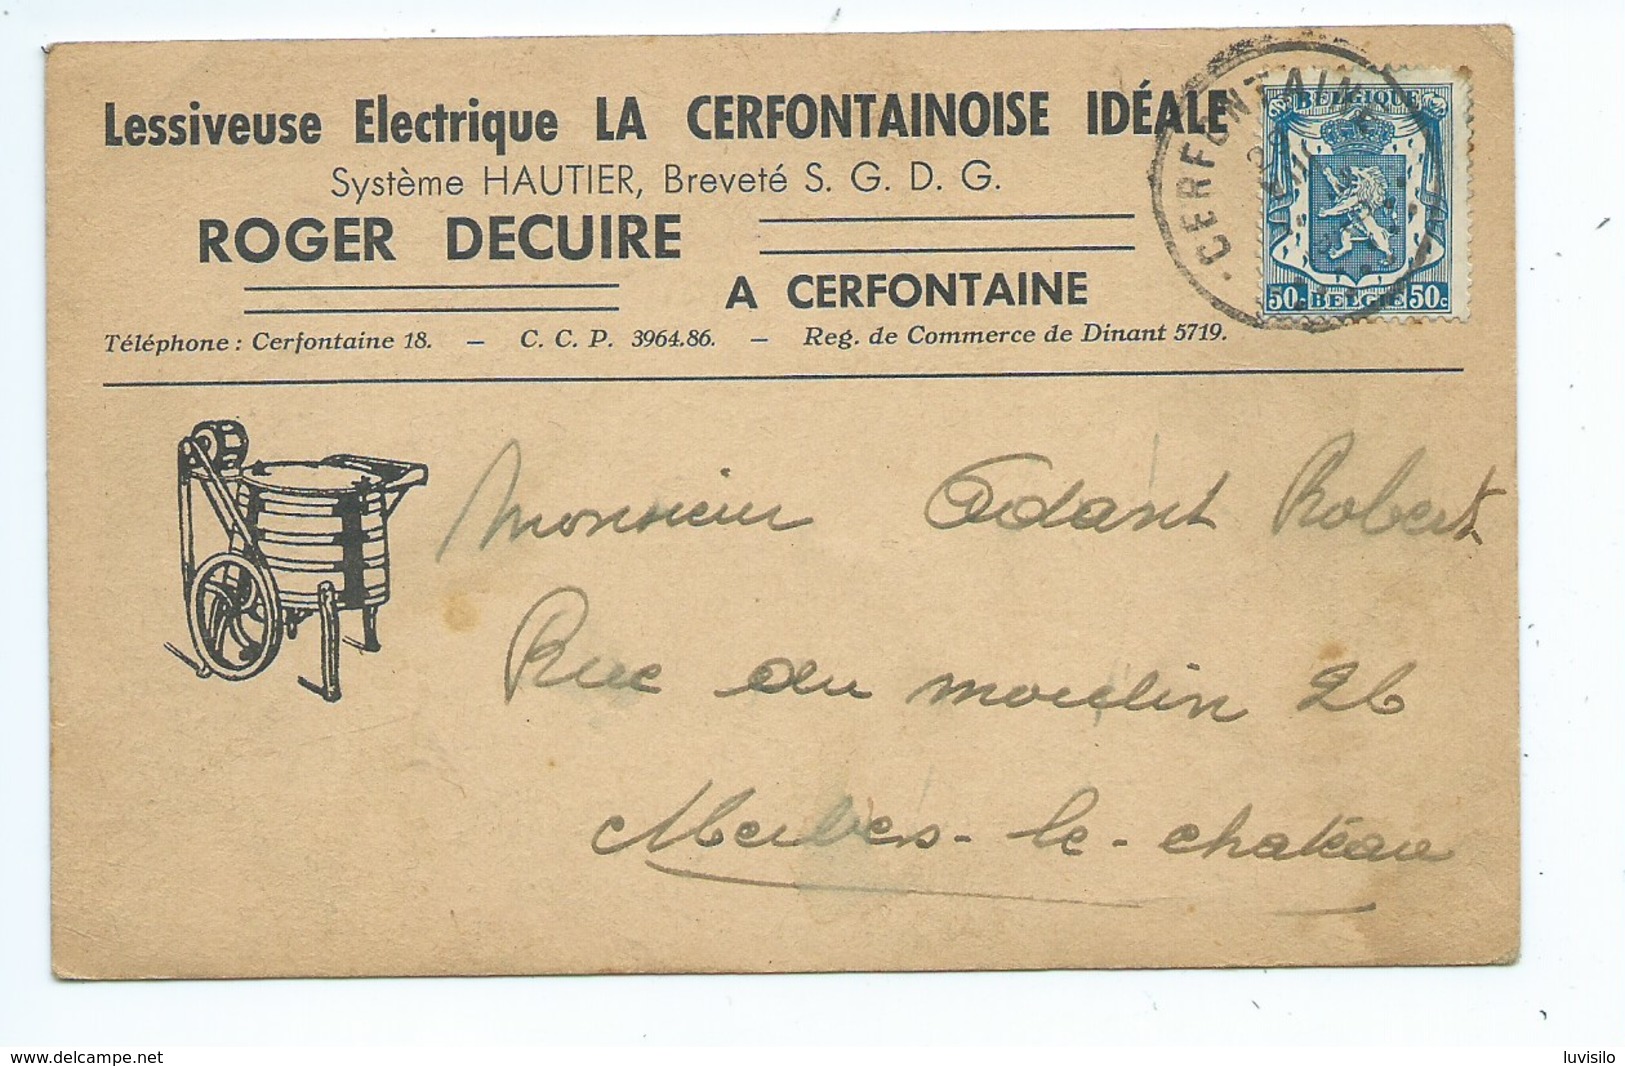 Cerfontaine Lessiveuse Electrique La Cerfontainoise Idéale Roger DECUIRE - Cerfontaine